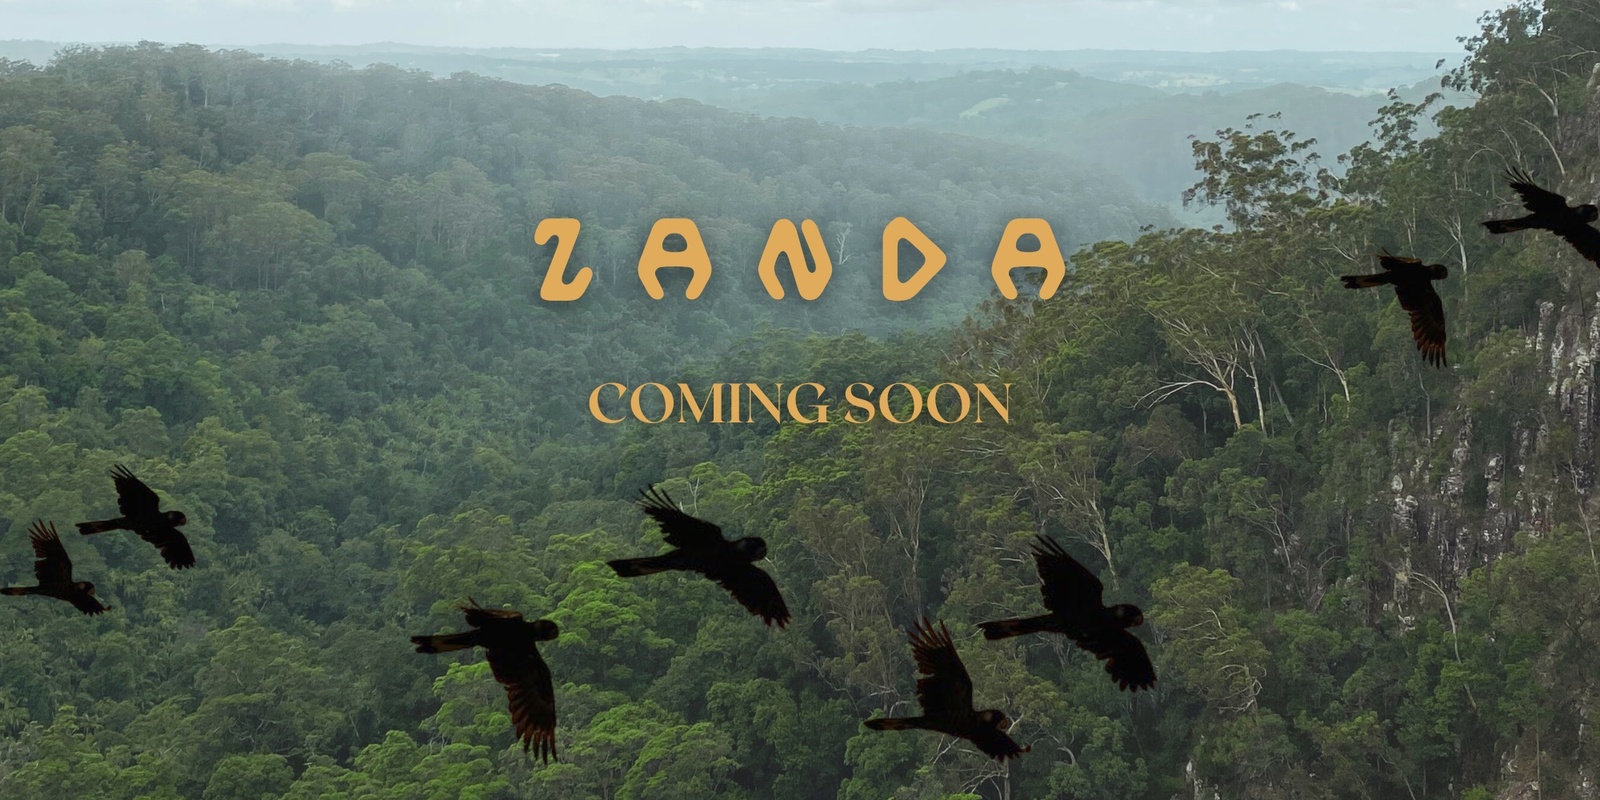 Zanda's banner